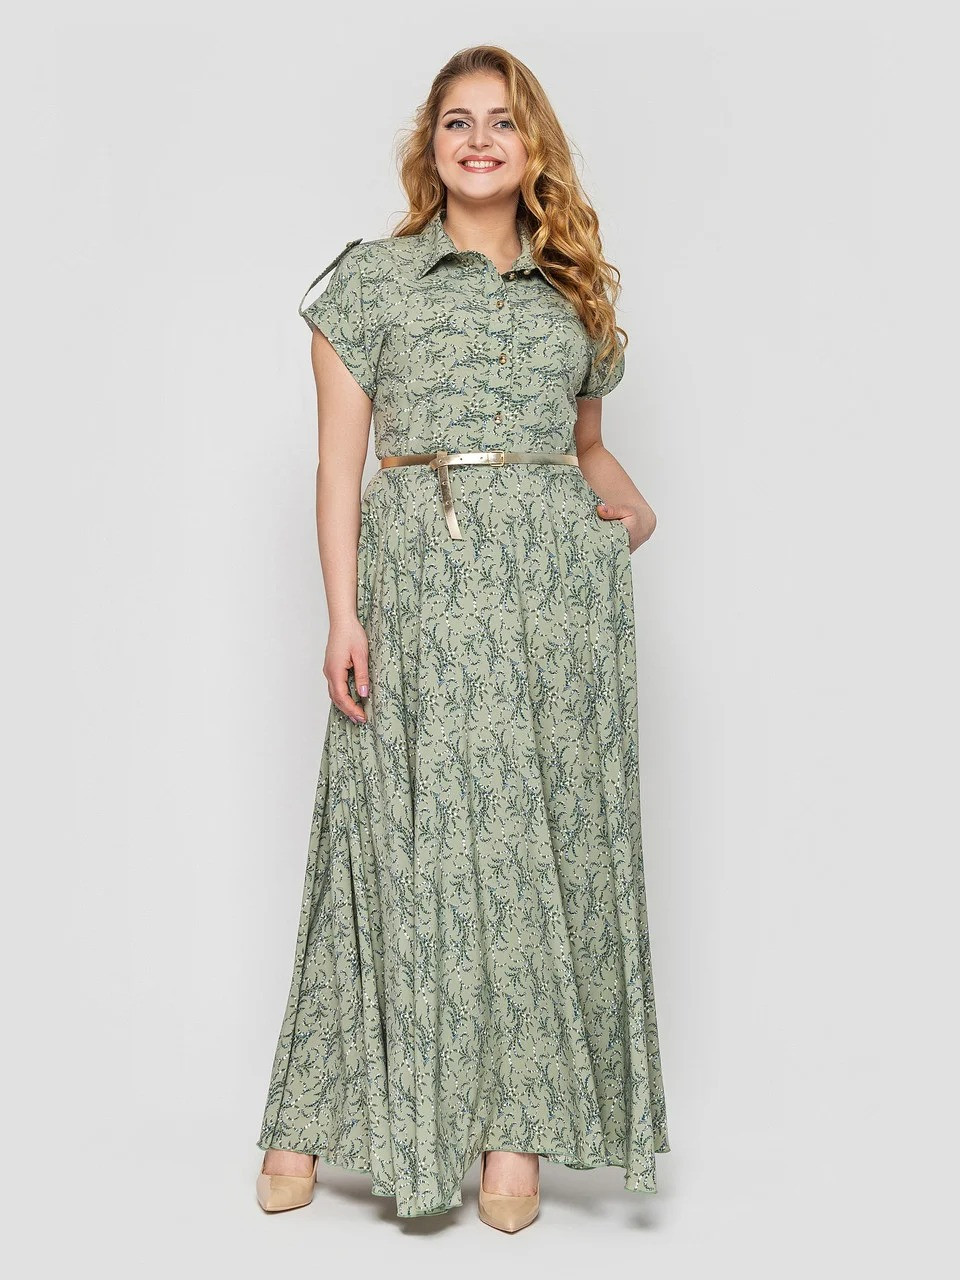 Жіноче плаття максі Олена оливка / великих розмірів / розмір 48, 50, 52